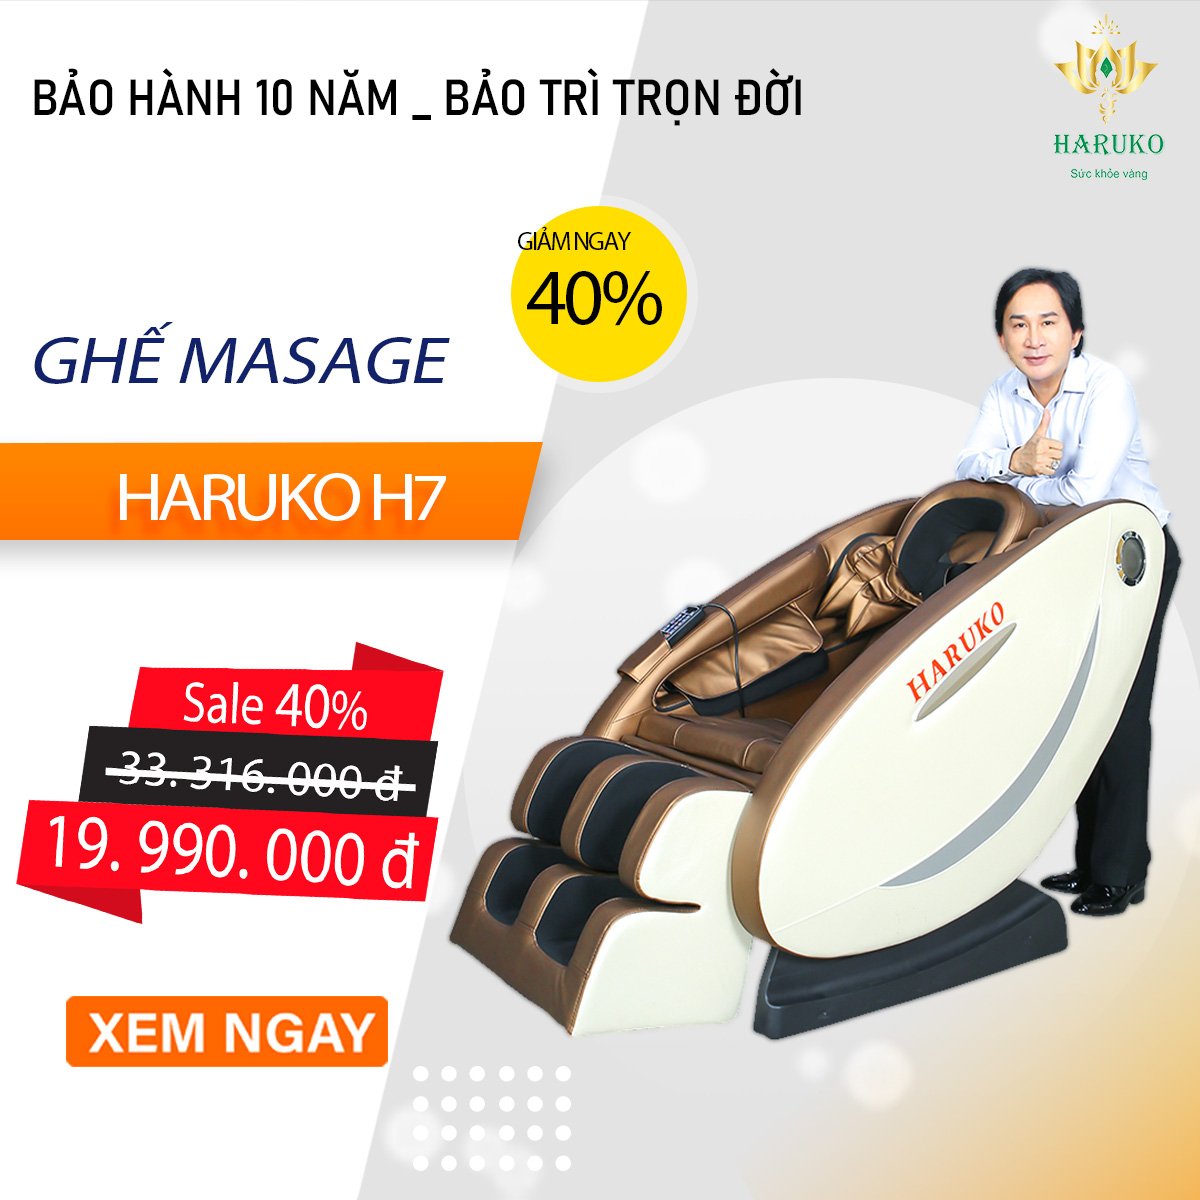 Ghế massage Haruko-H7 là sản phẩm nổi bật trong phân khúc tầm trung khi sở hữu nhiều tính năng ưu việt nâng tầm trải nghiệm